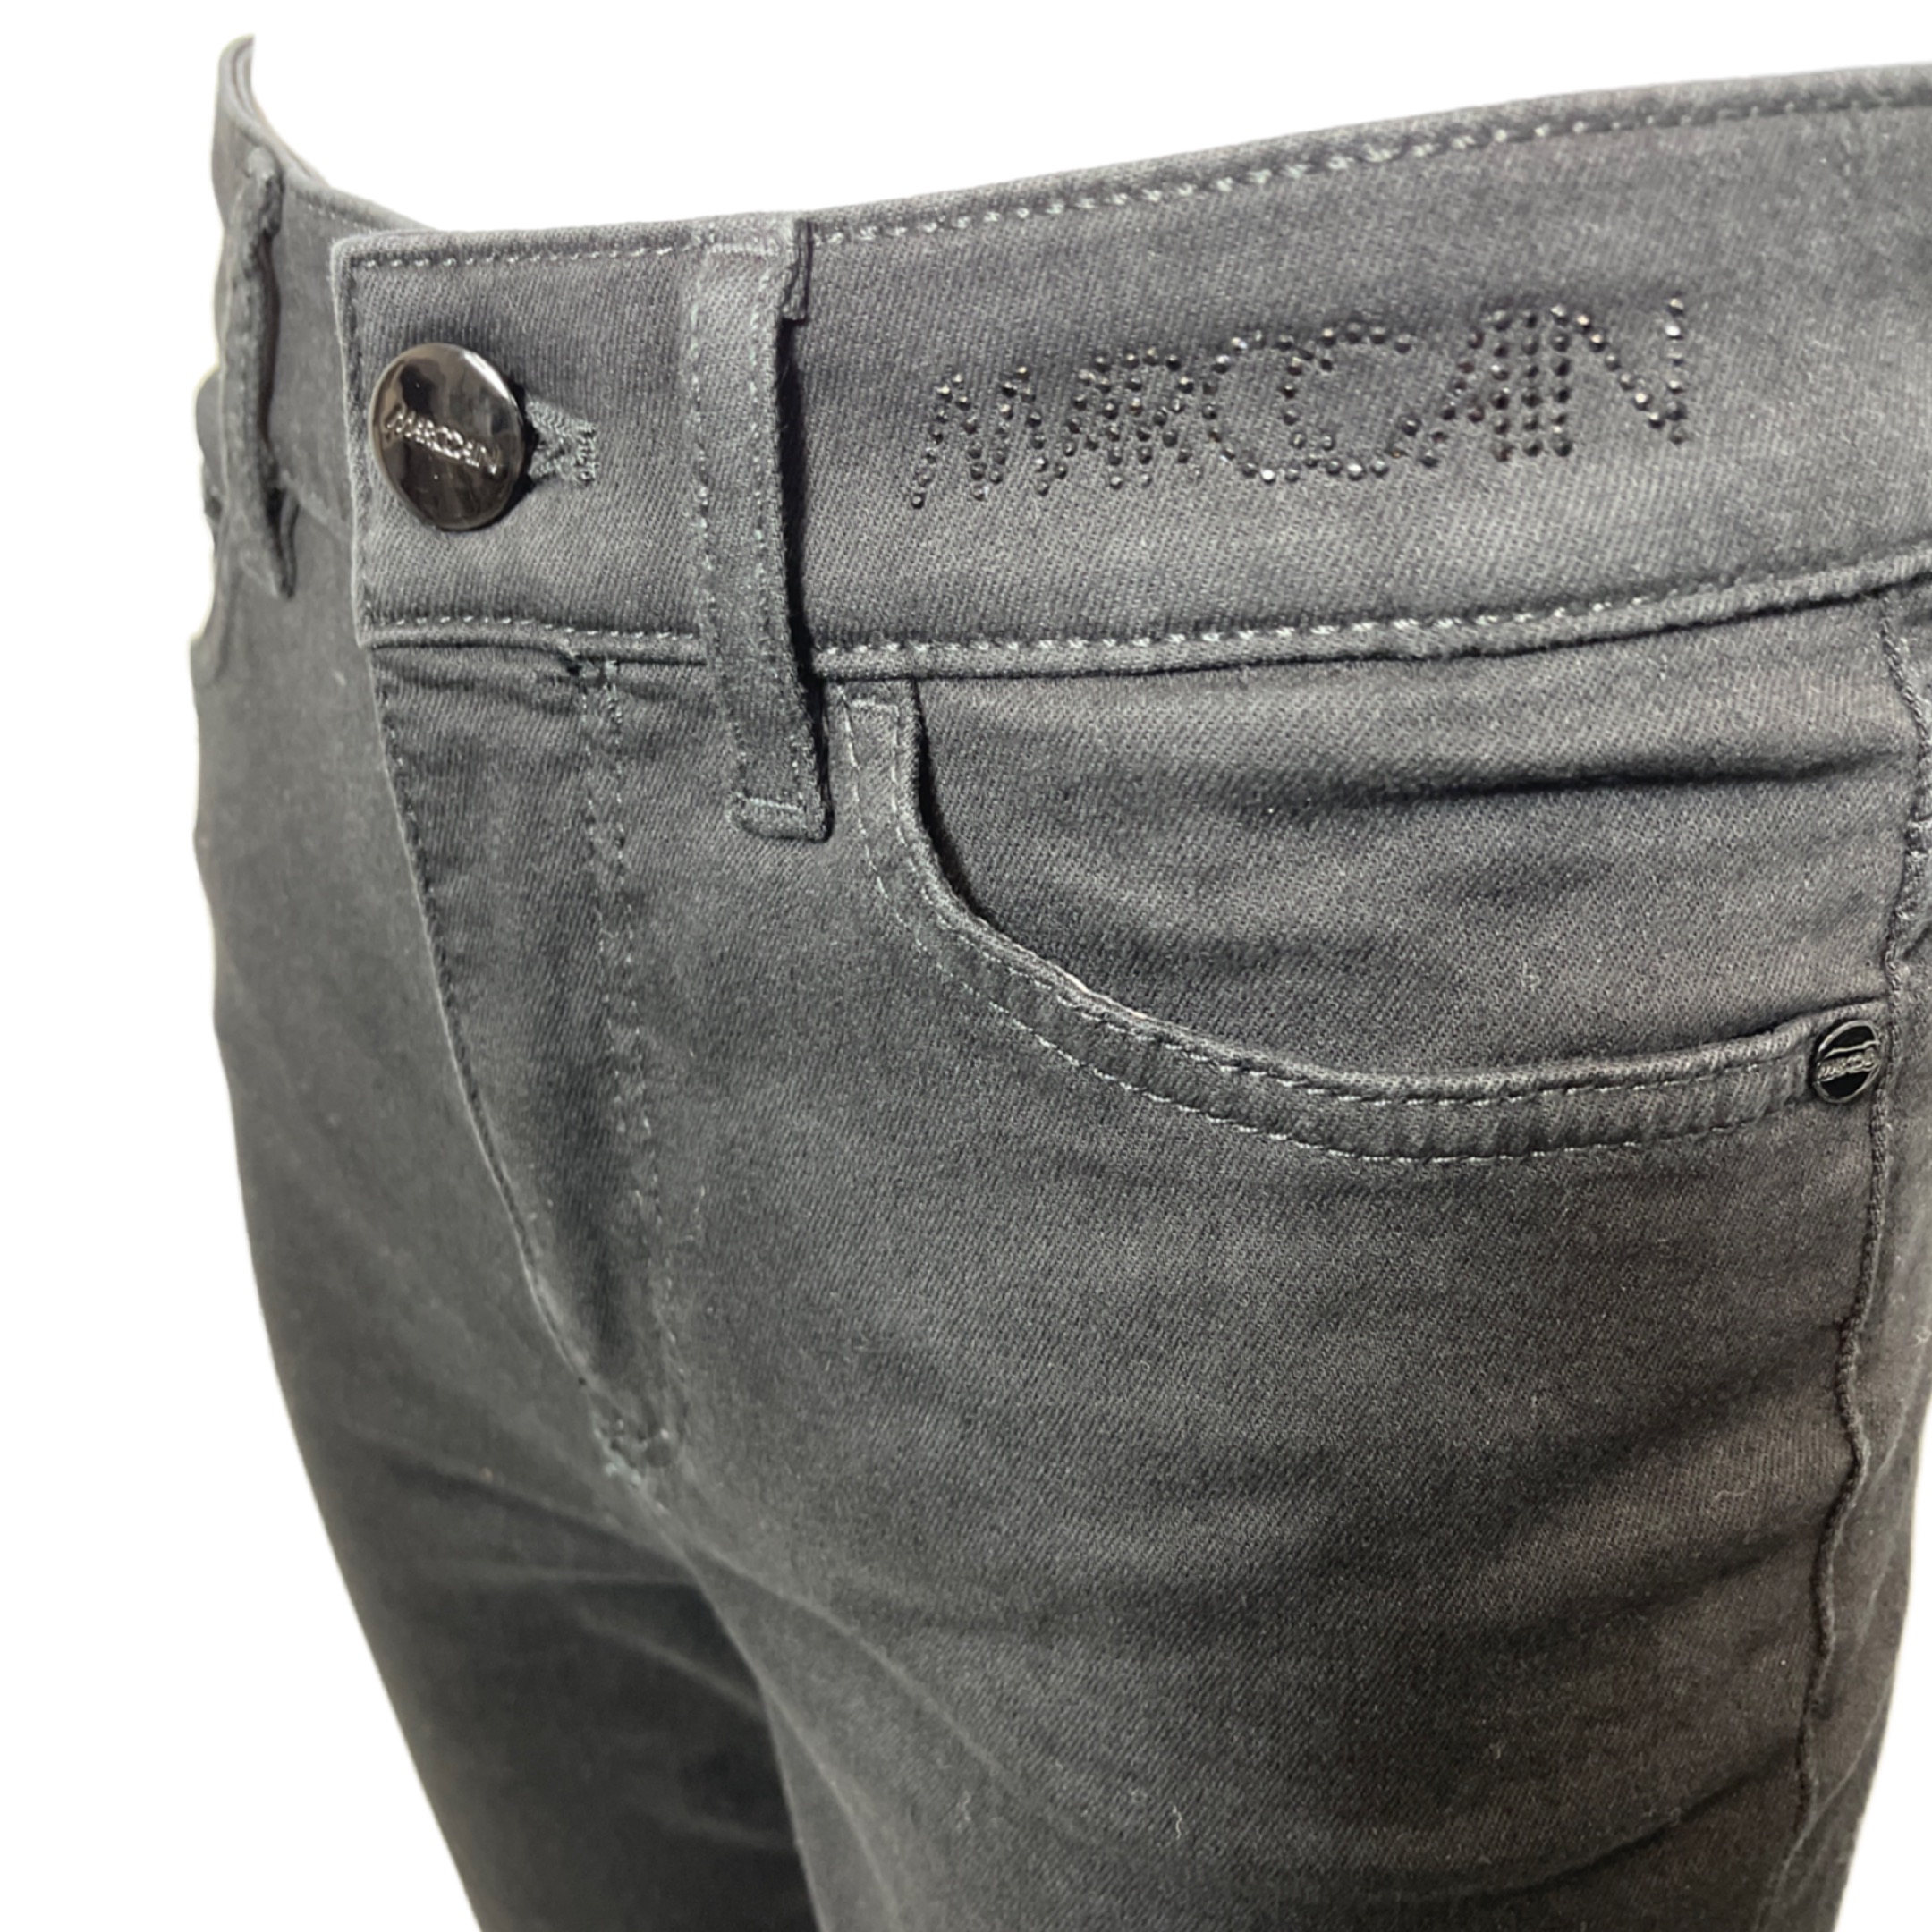 MARC CAIN UP 82.02 D70 Damen Jeans Rethink Together SILEA Slim Fit Schwarz 900